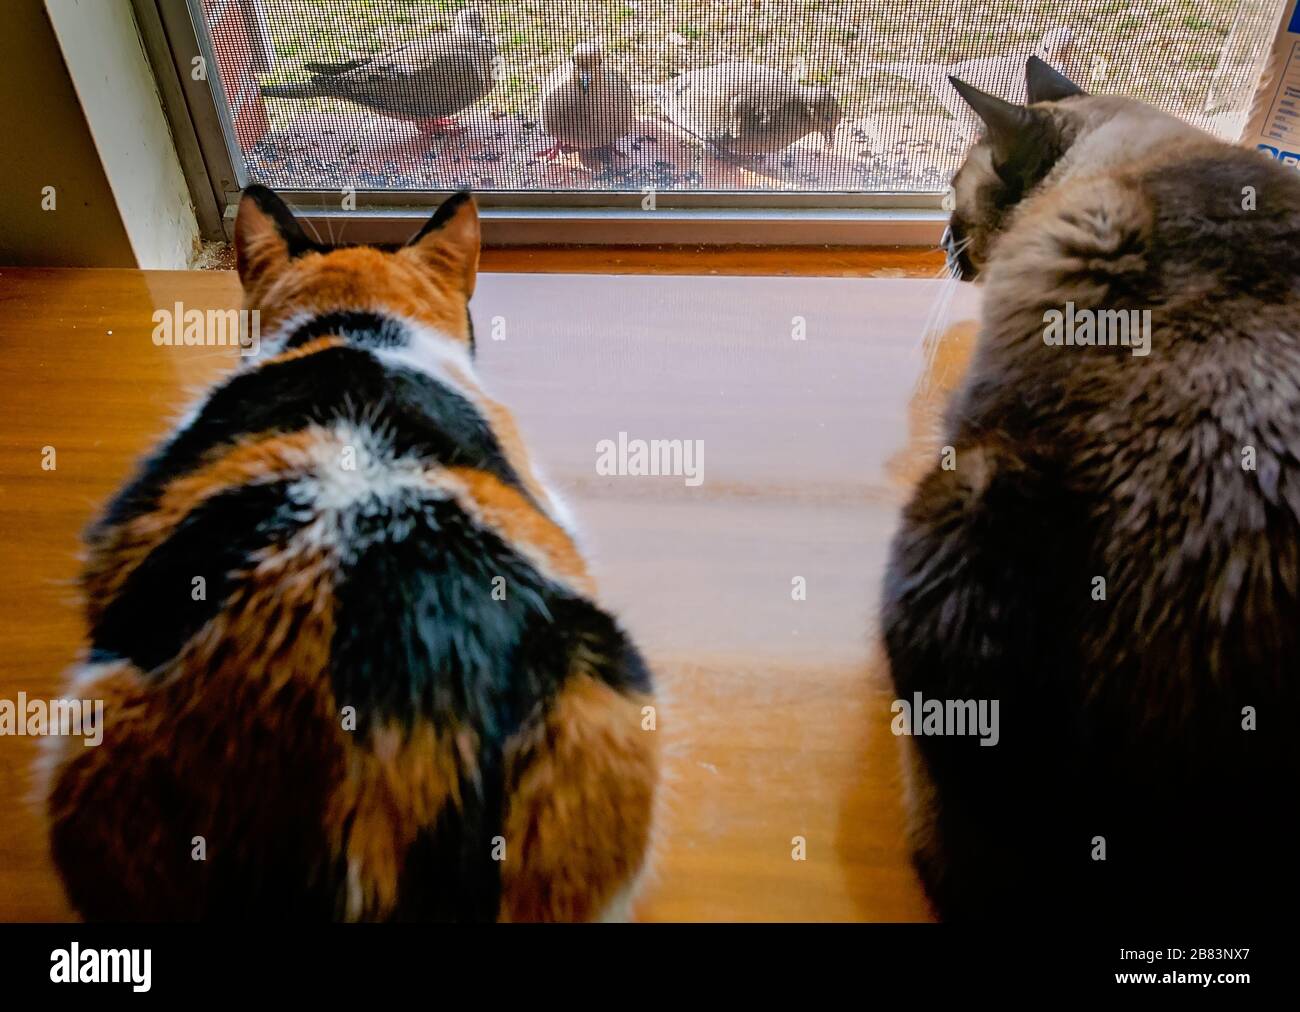 Zucca, un gatto calico, e Twinkie, un gatto siamese, guardare colombe lutto mangiare birdseed da una sporgenza finestra, 13 marzo 2020, a Coden, Alabama. Foto Stock